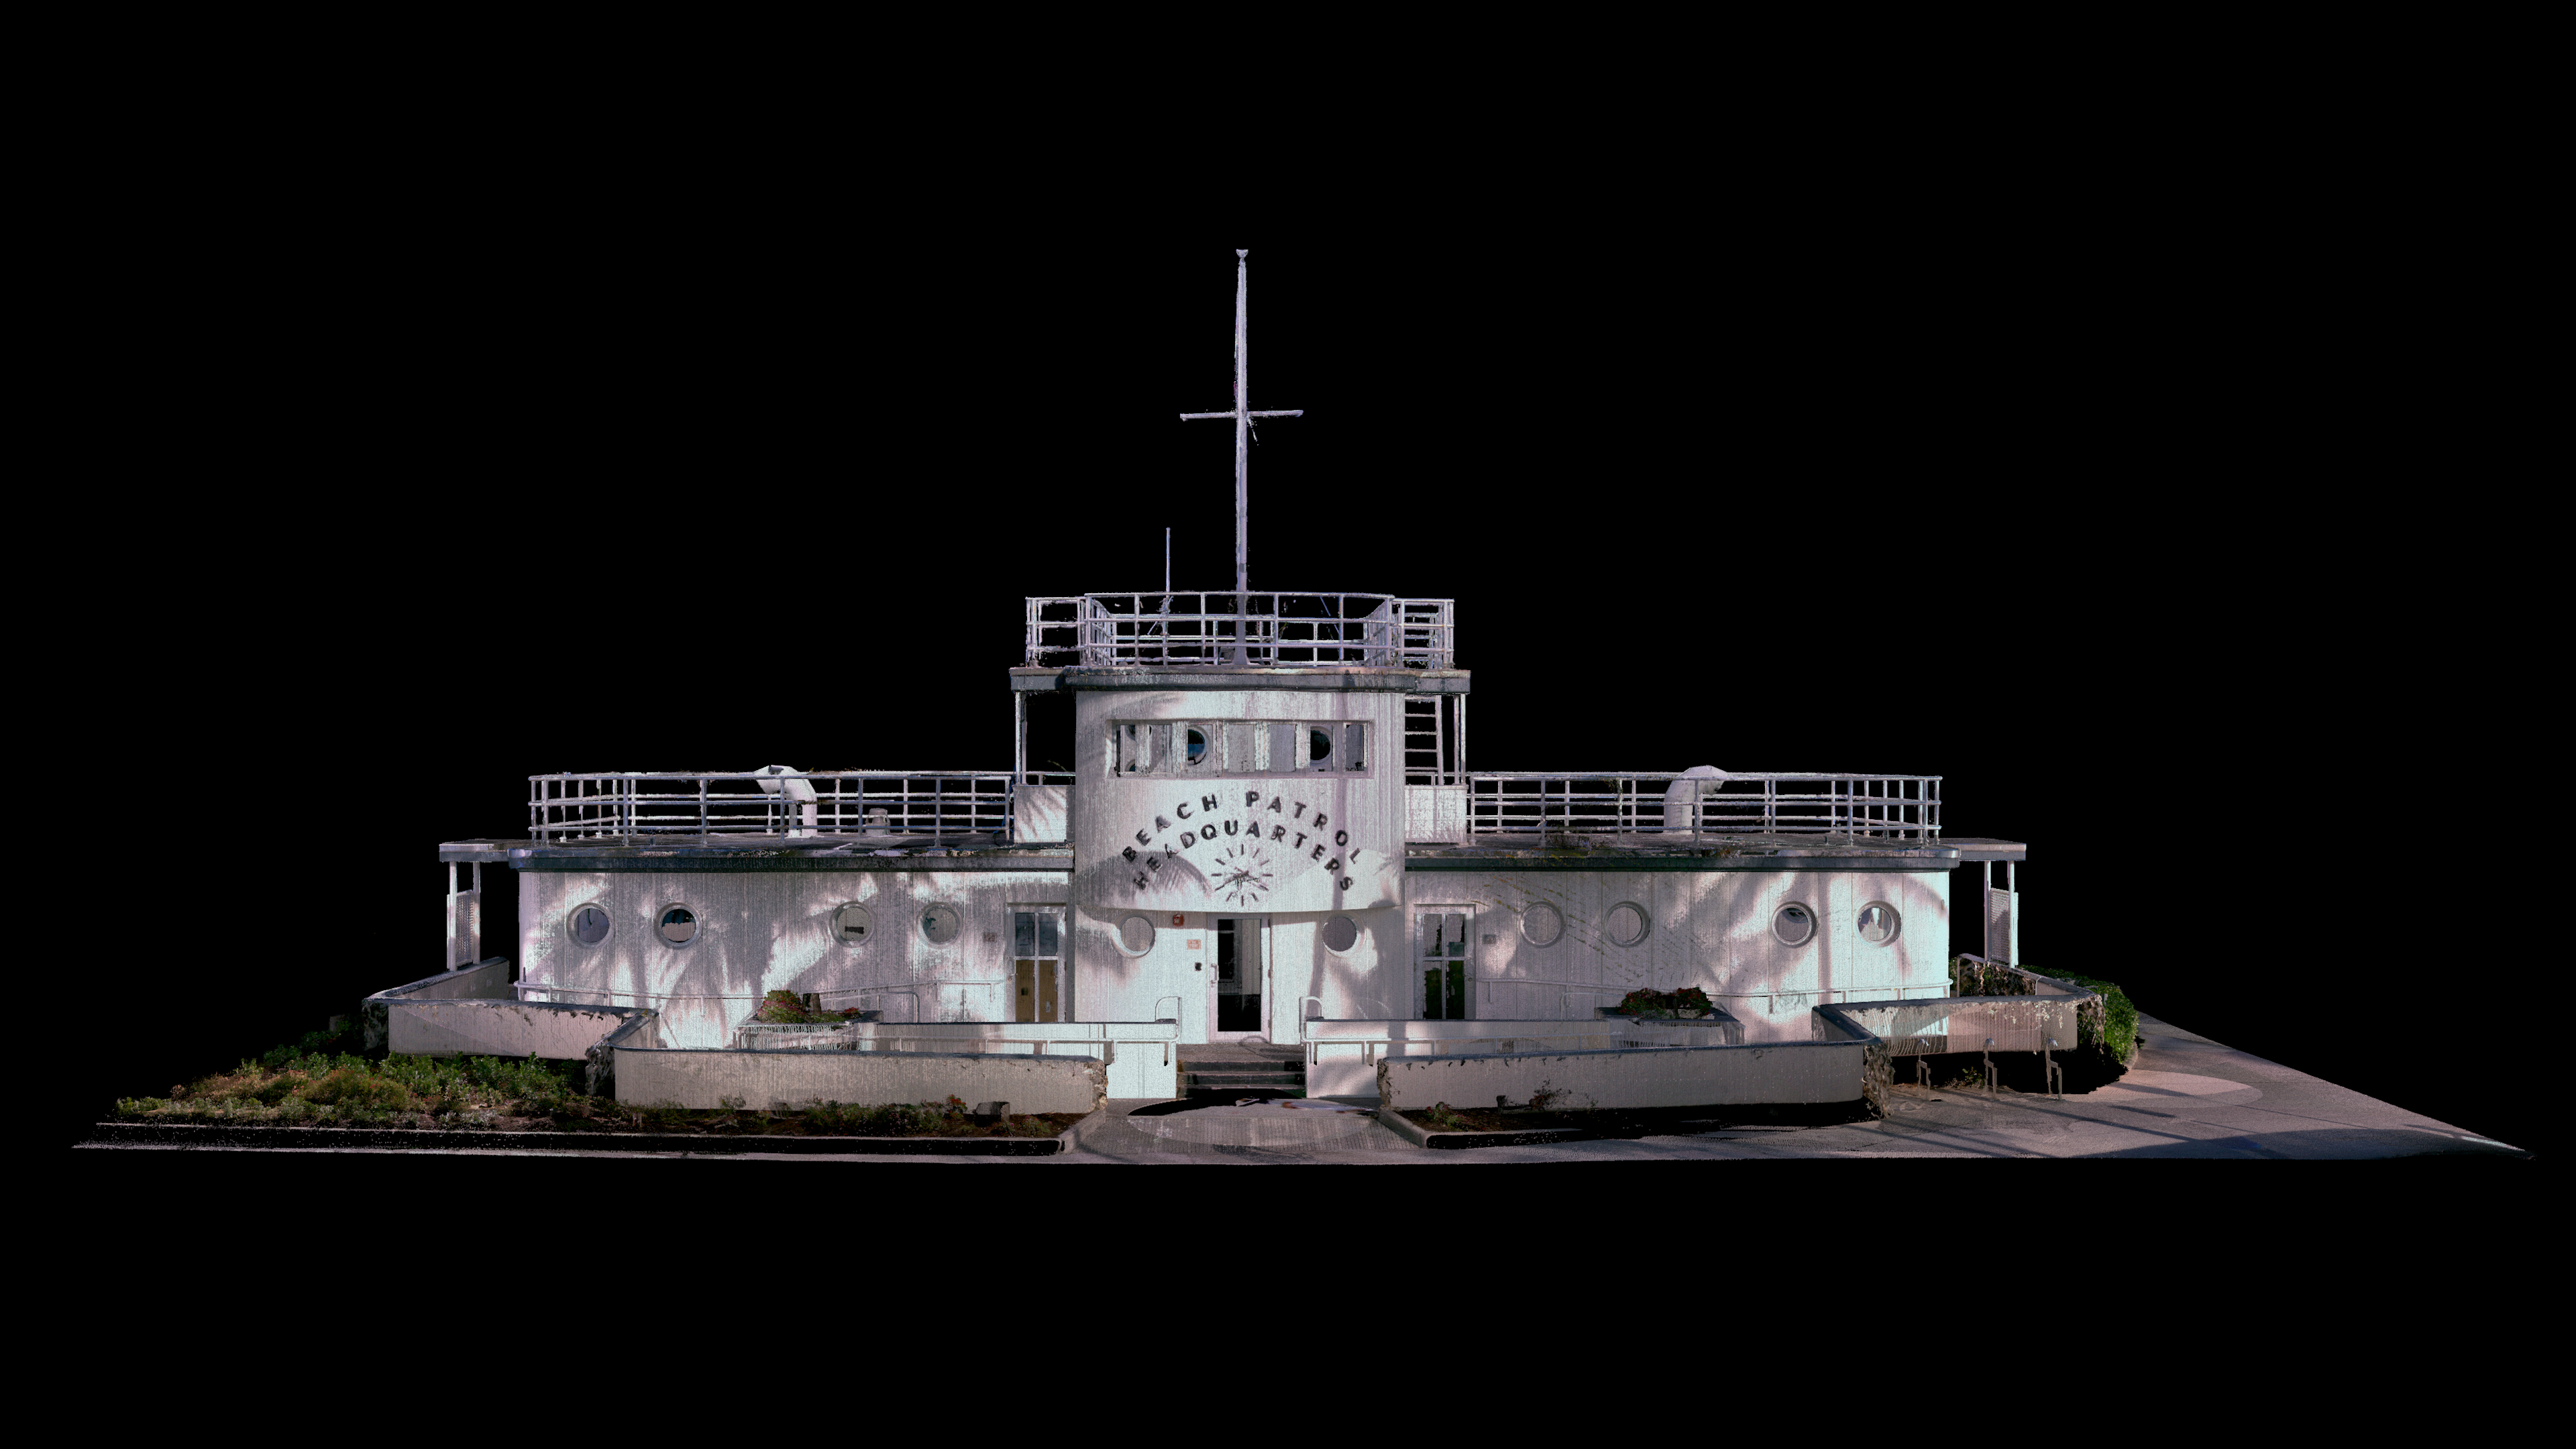 Scansione 3D dell'edificio del Beach Patrol effettuata con BLK360 nel software Register360